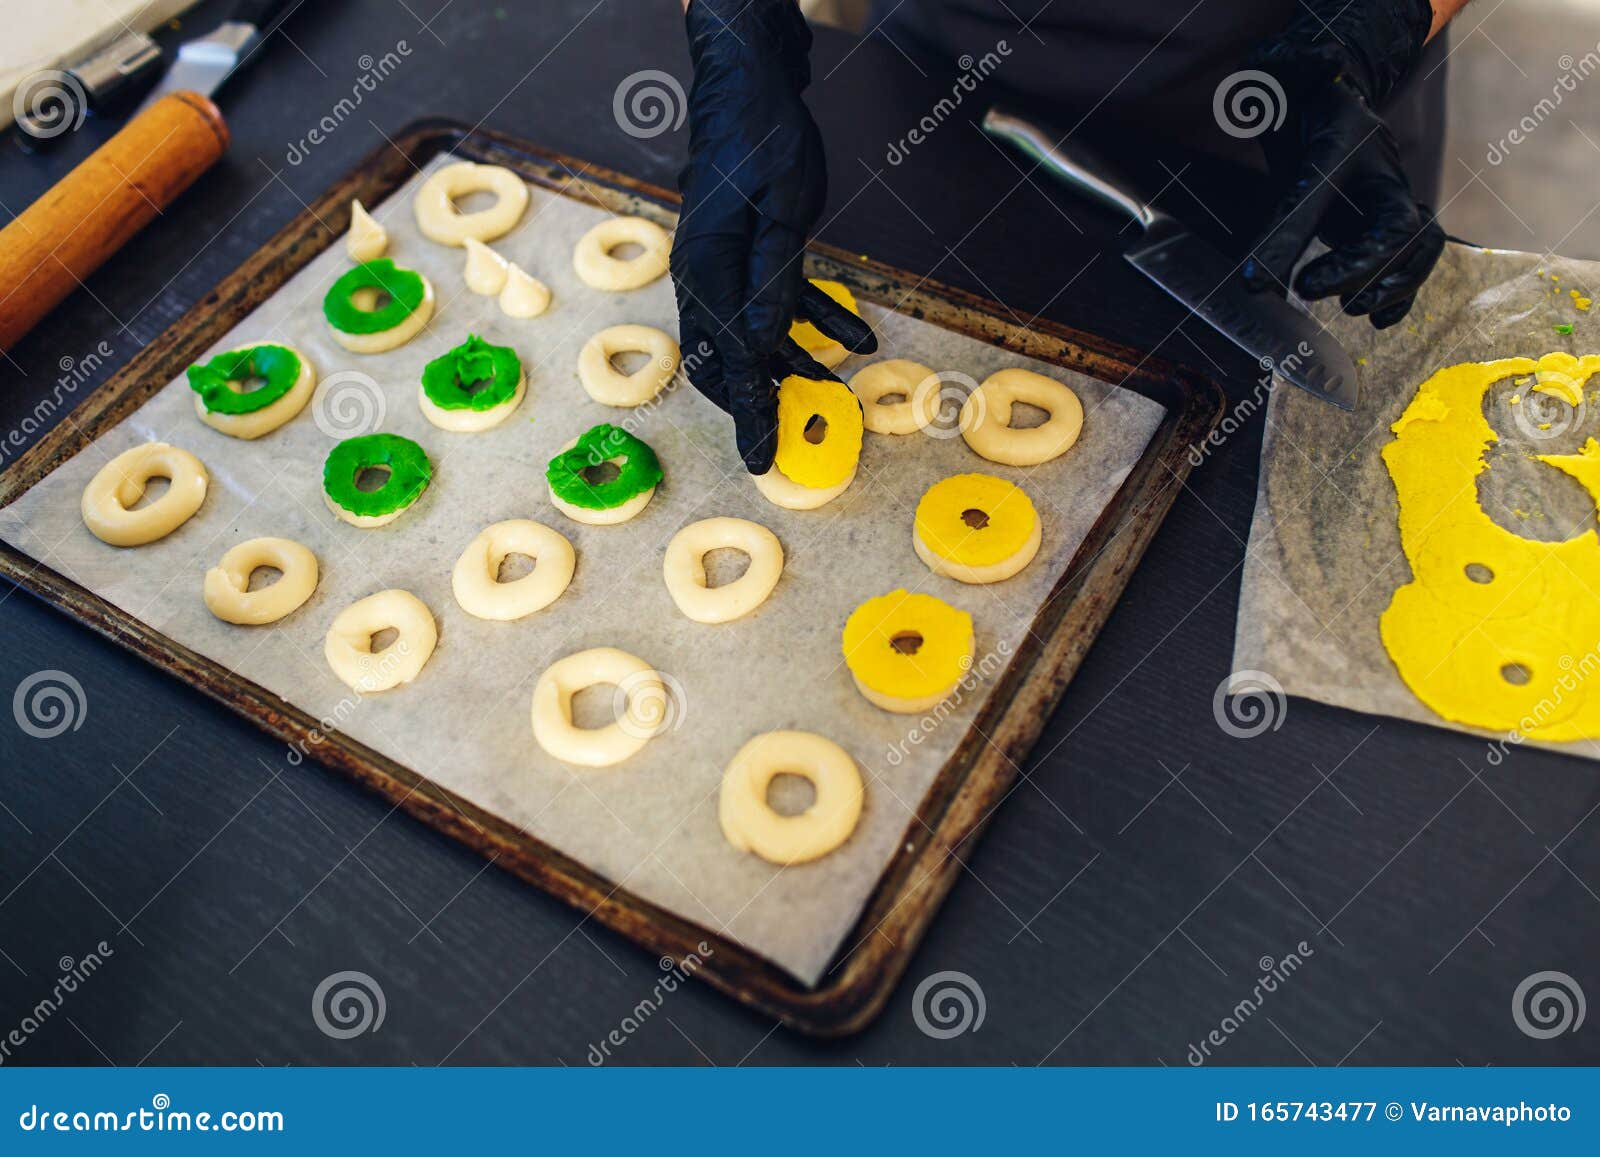 Pastelaria decora profiteroles crus com massa de caroço verde e amarelo